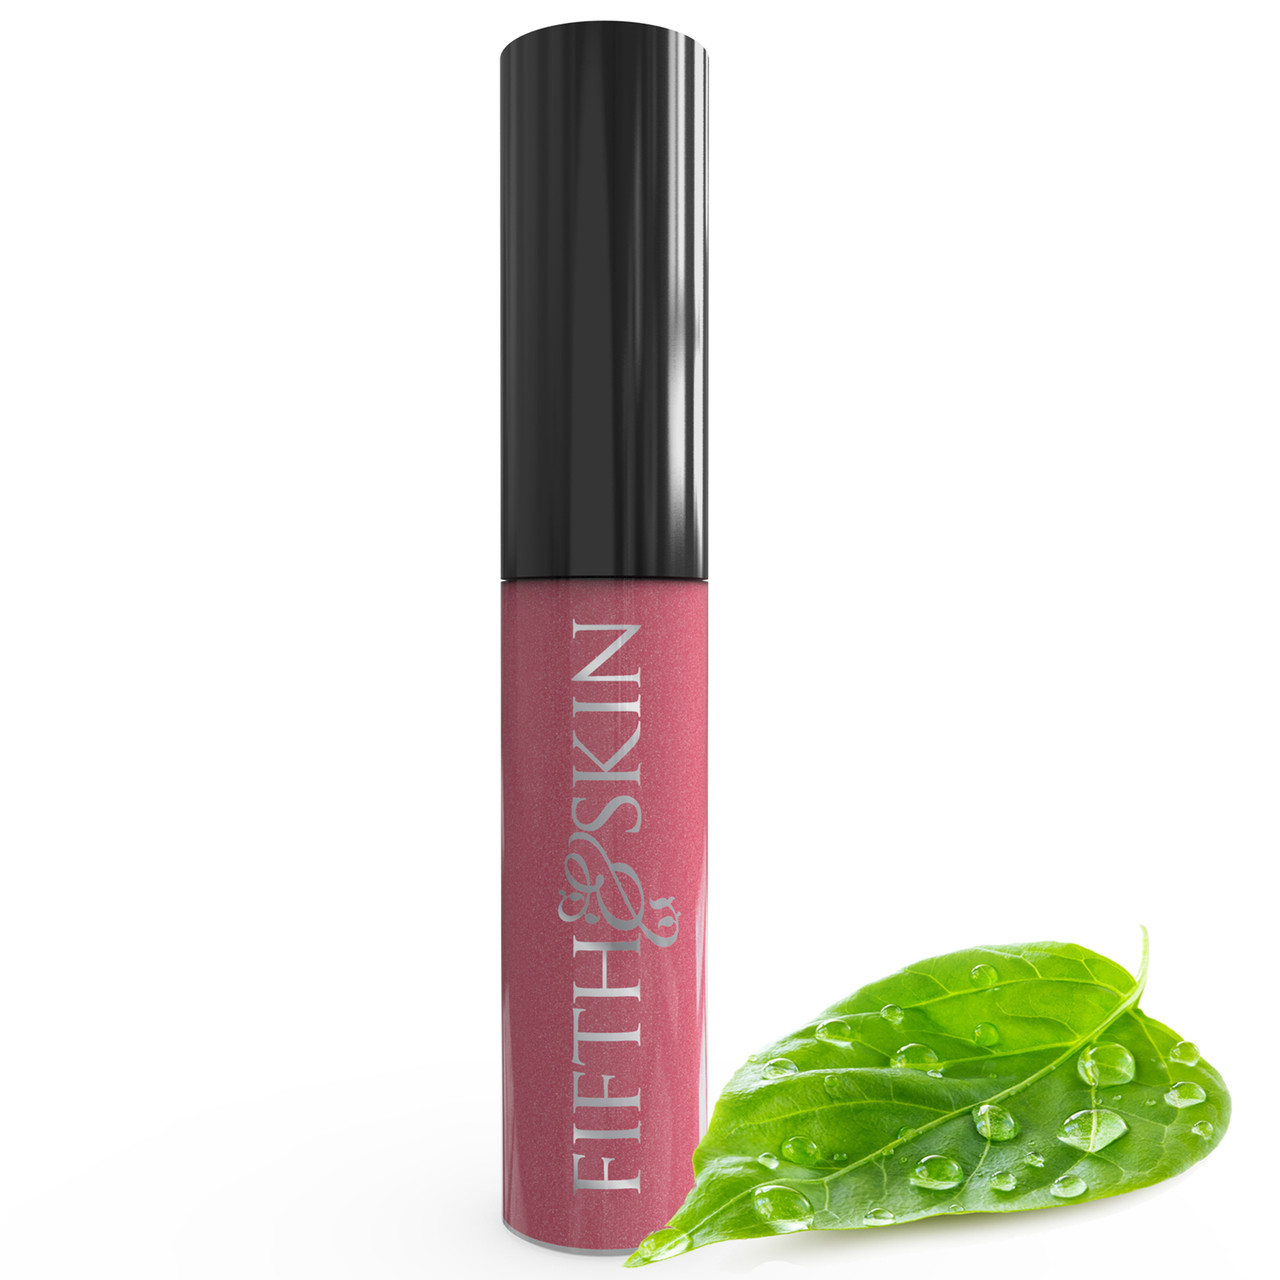 Better'n Ur Lips Gloss (VELVET) | 100% Natural | 90% Organic | Gluten Free | Cruelty Free | Vegan | Hypoallergenic | Smooth, Velvety Feel